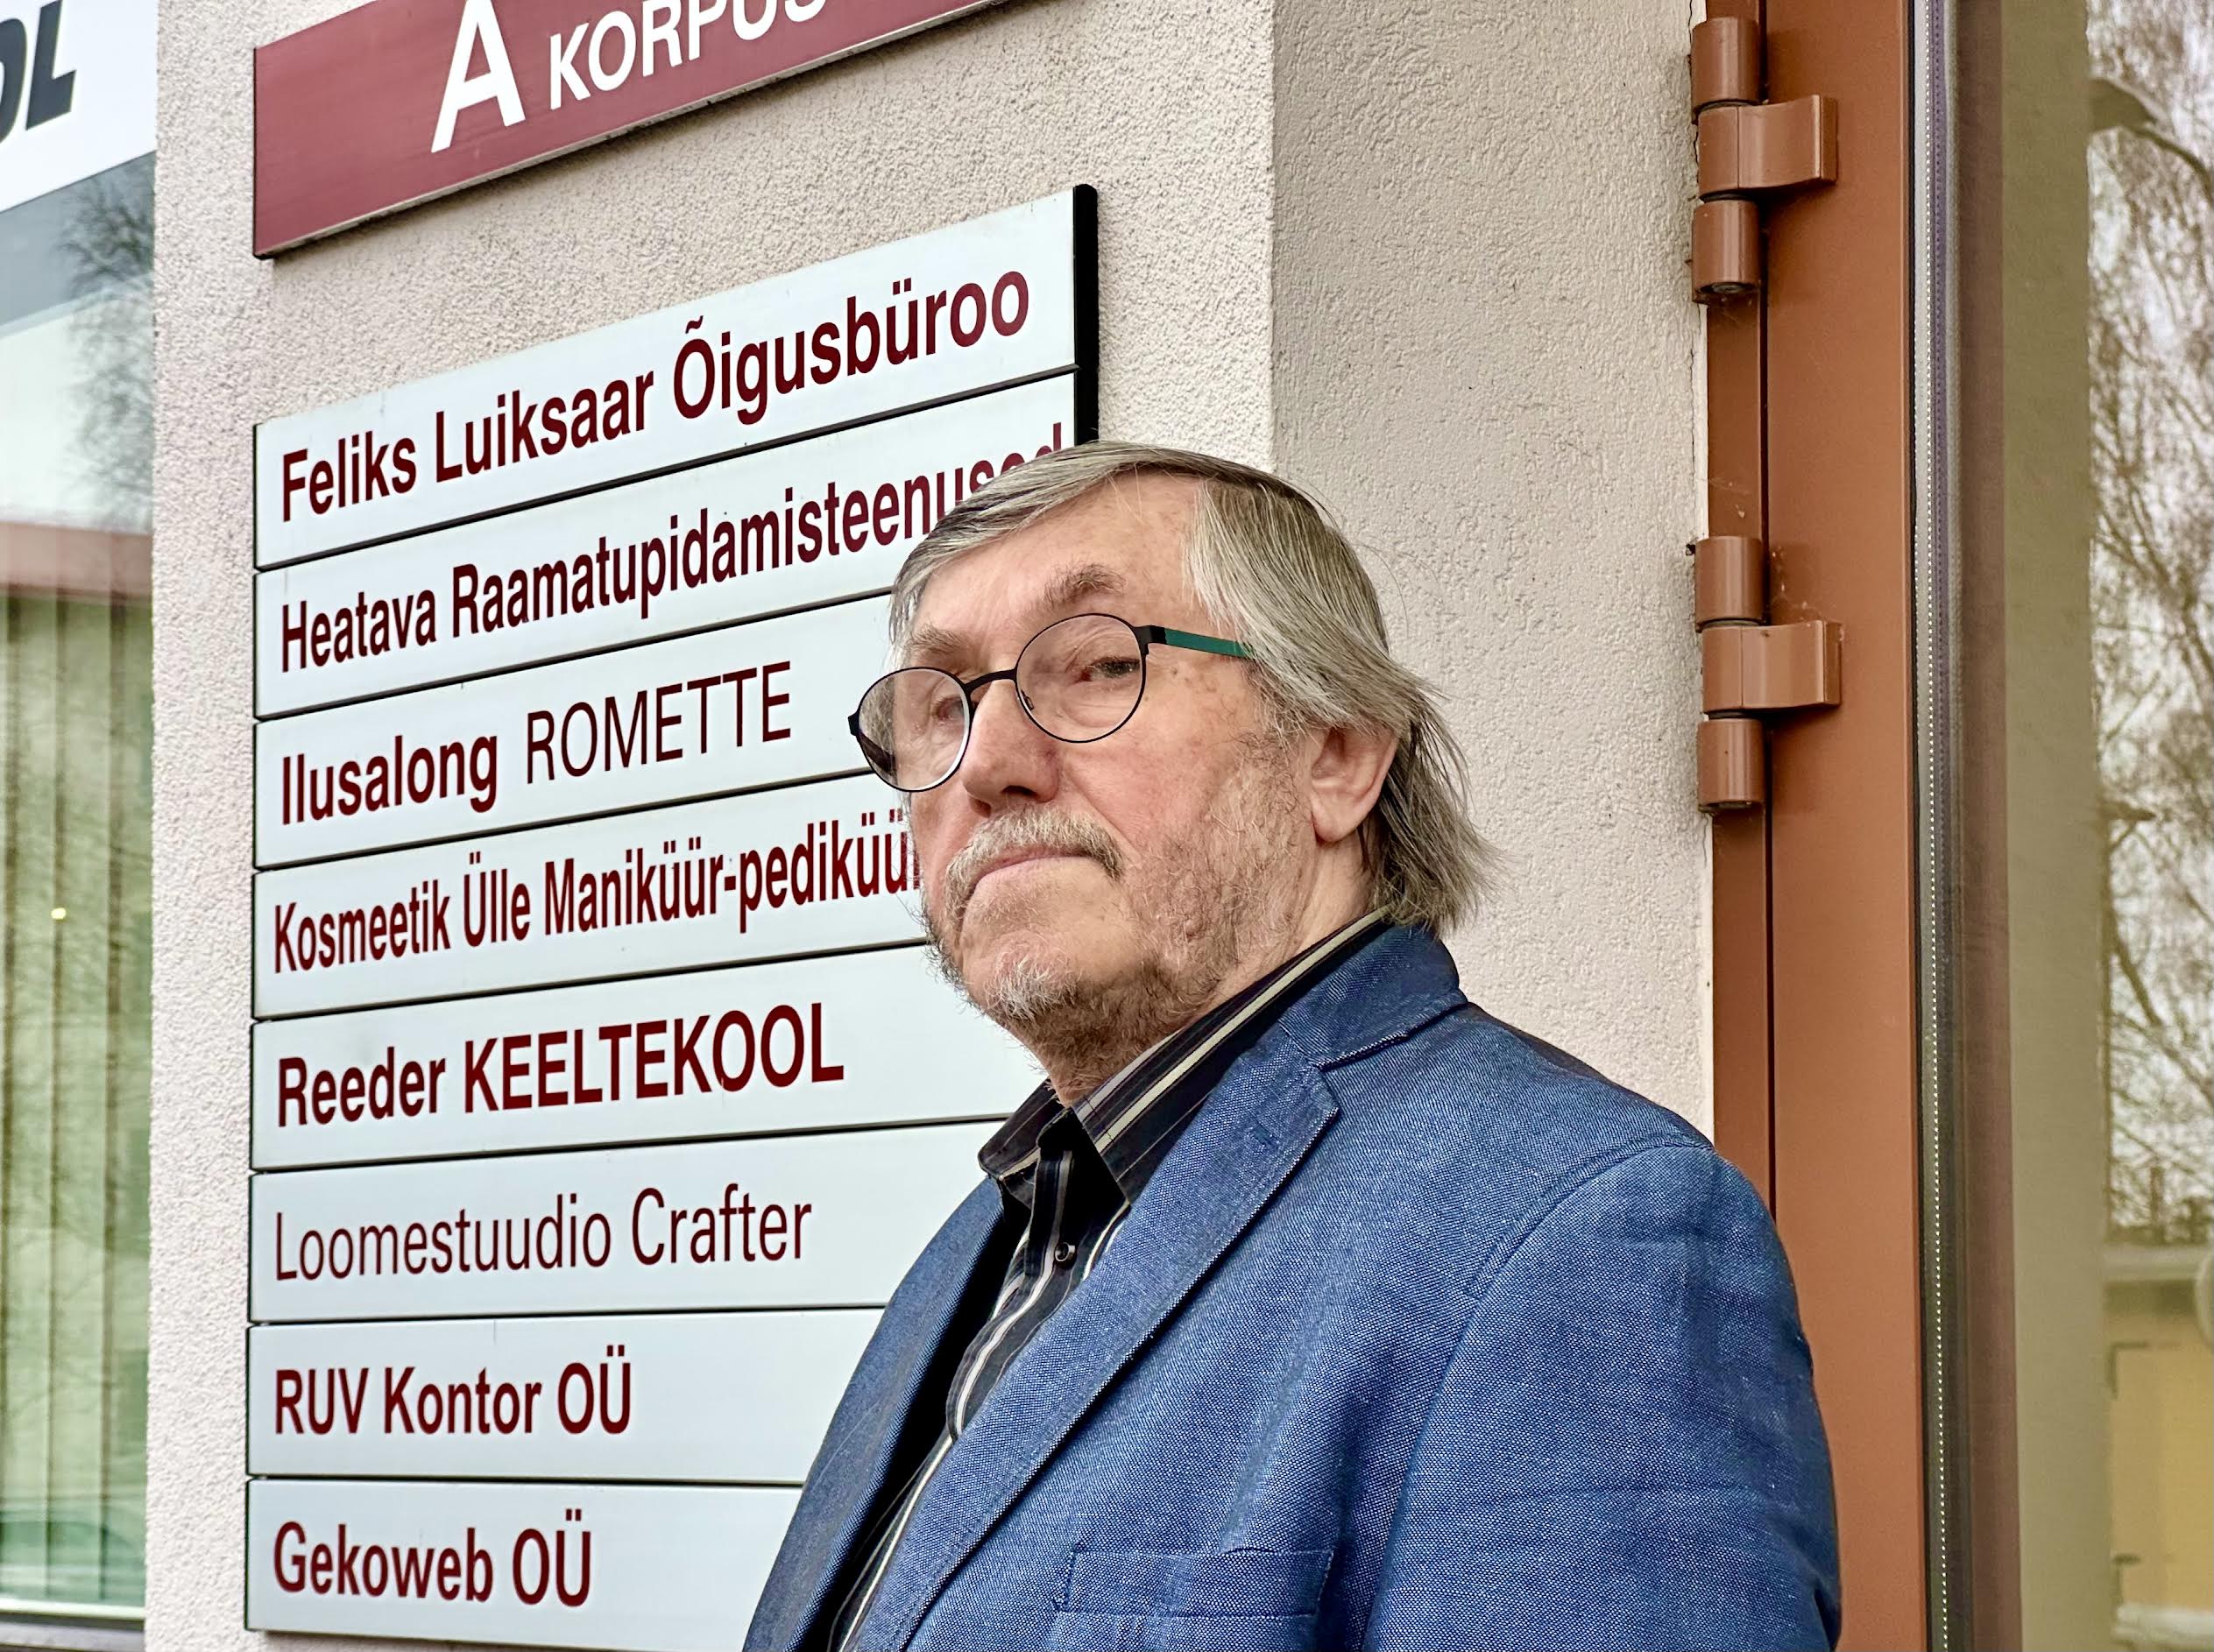 Feliks Luiksaar oma Lembitu 2a õigusbüroo ees, kus ta osutab õigusalast nõustamist, õigusdokumentide koostamist ja esindamist juba paarkümmend aastat. Fotod: KALEV ANNOM